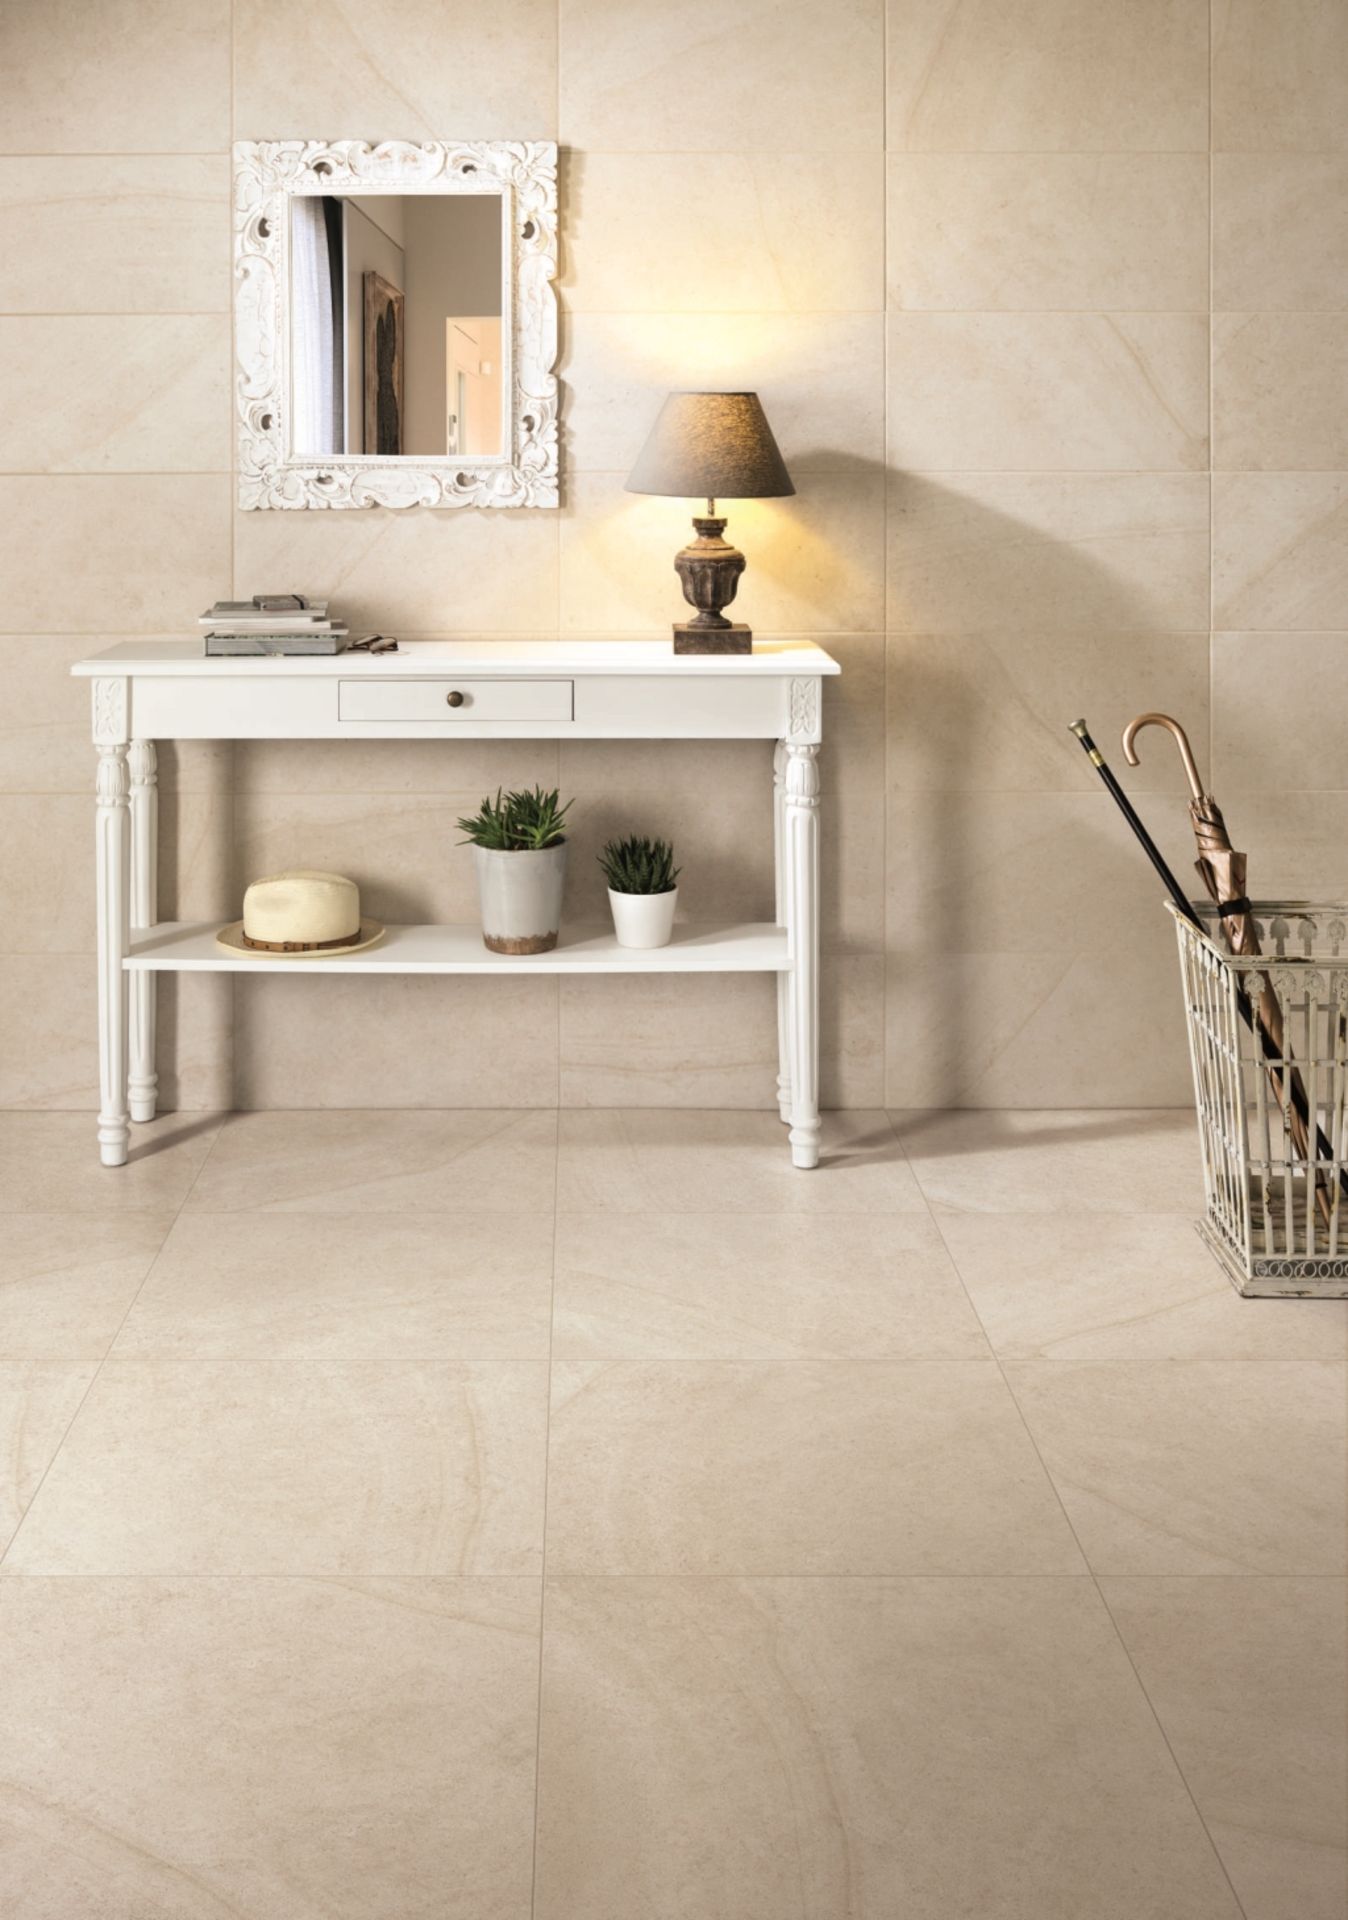 Maison Blanc 8.5MM 60X30CM High Quality Italian Porcelain tiles 2 pallets - Image 2 of 3